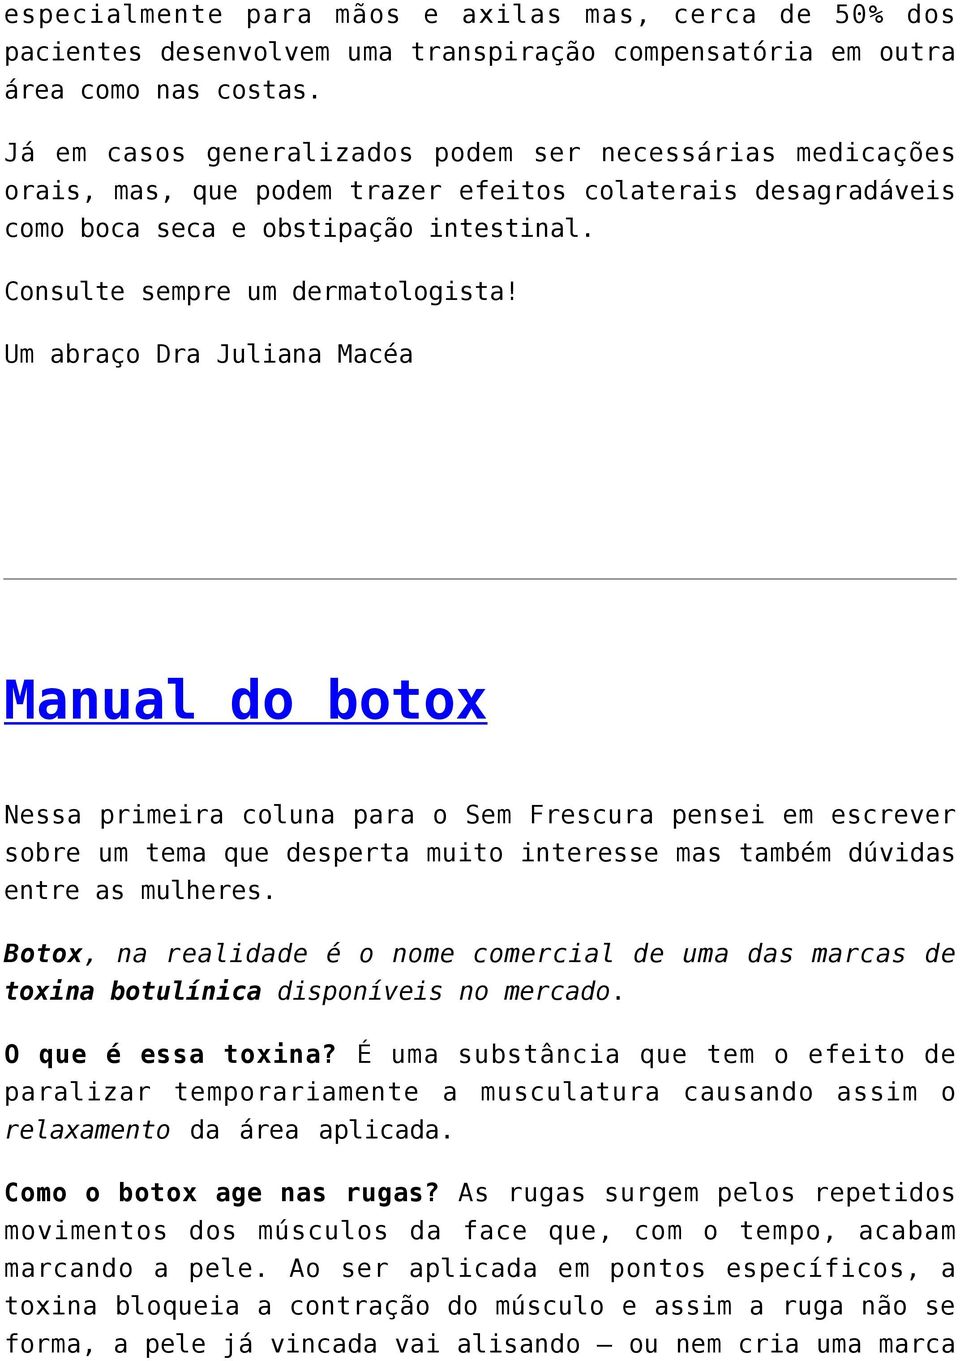 Um abraço Dra Juliana Macéa Manual do botox Nessa primeira coluna para o Sem Frescura pensei em escrever sobre um tema que desperta muito interesse mas também dúvidas entre as mulheres.